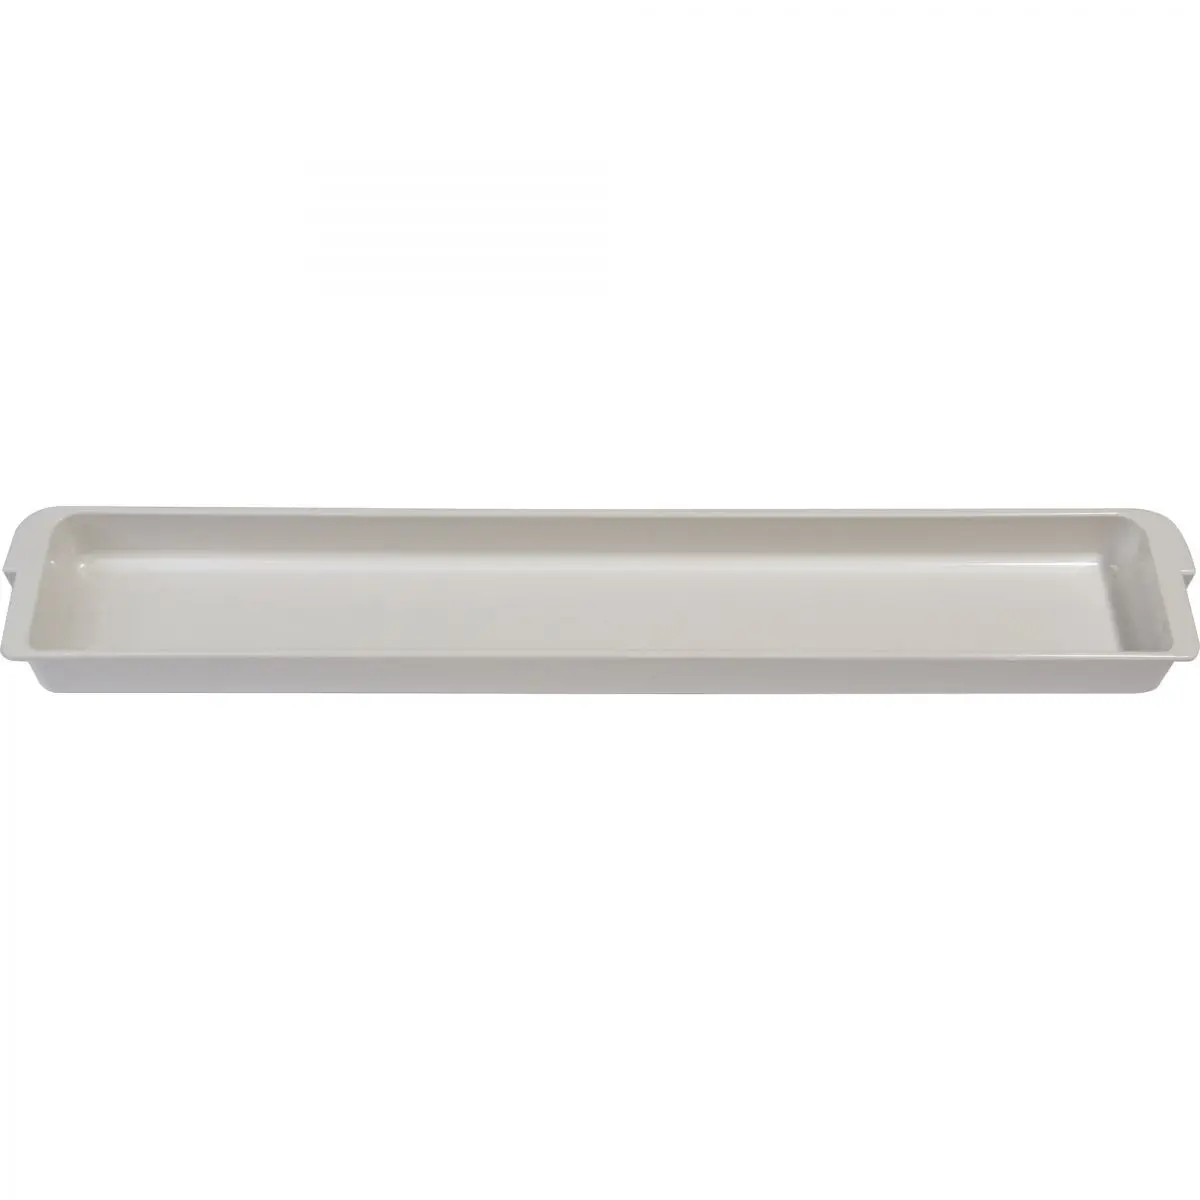 Suport superior, alb, L 42,1 x P 6,5 x H 3 cm pentru frigidere CoolMatic CRX 110, 140